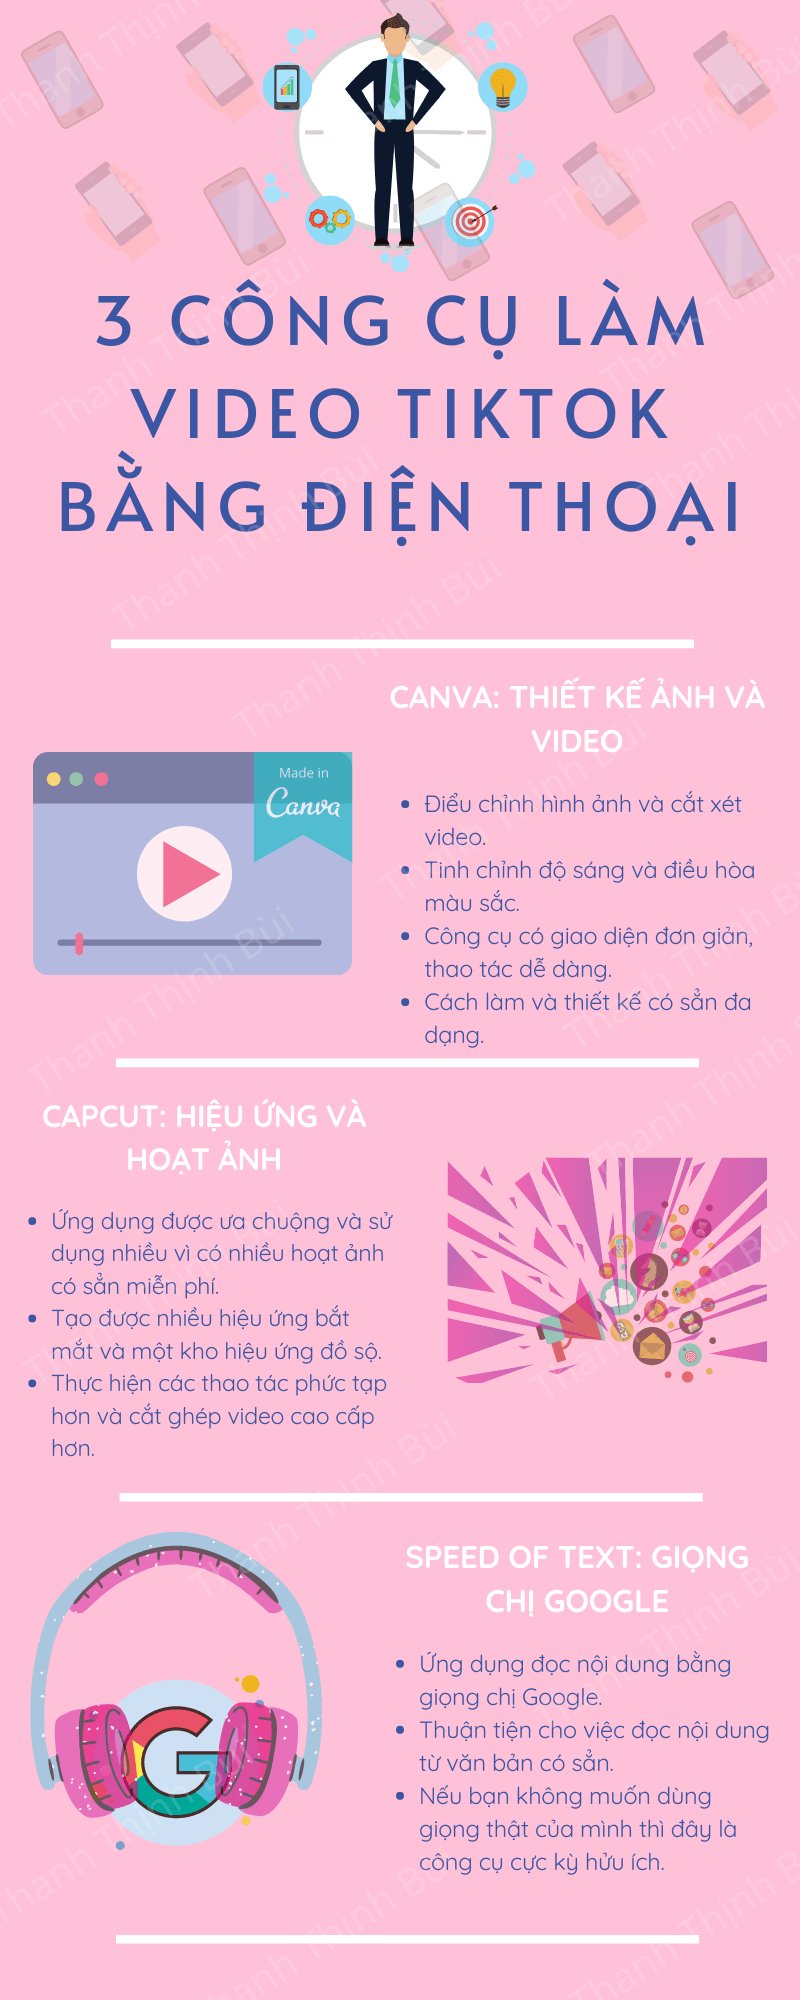 Cong-cu-Tiktok-marketing-infographic